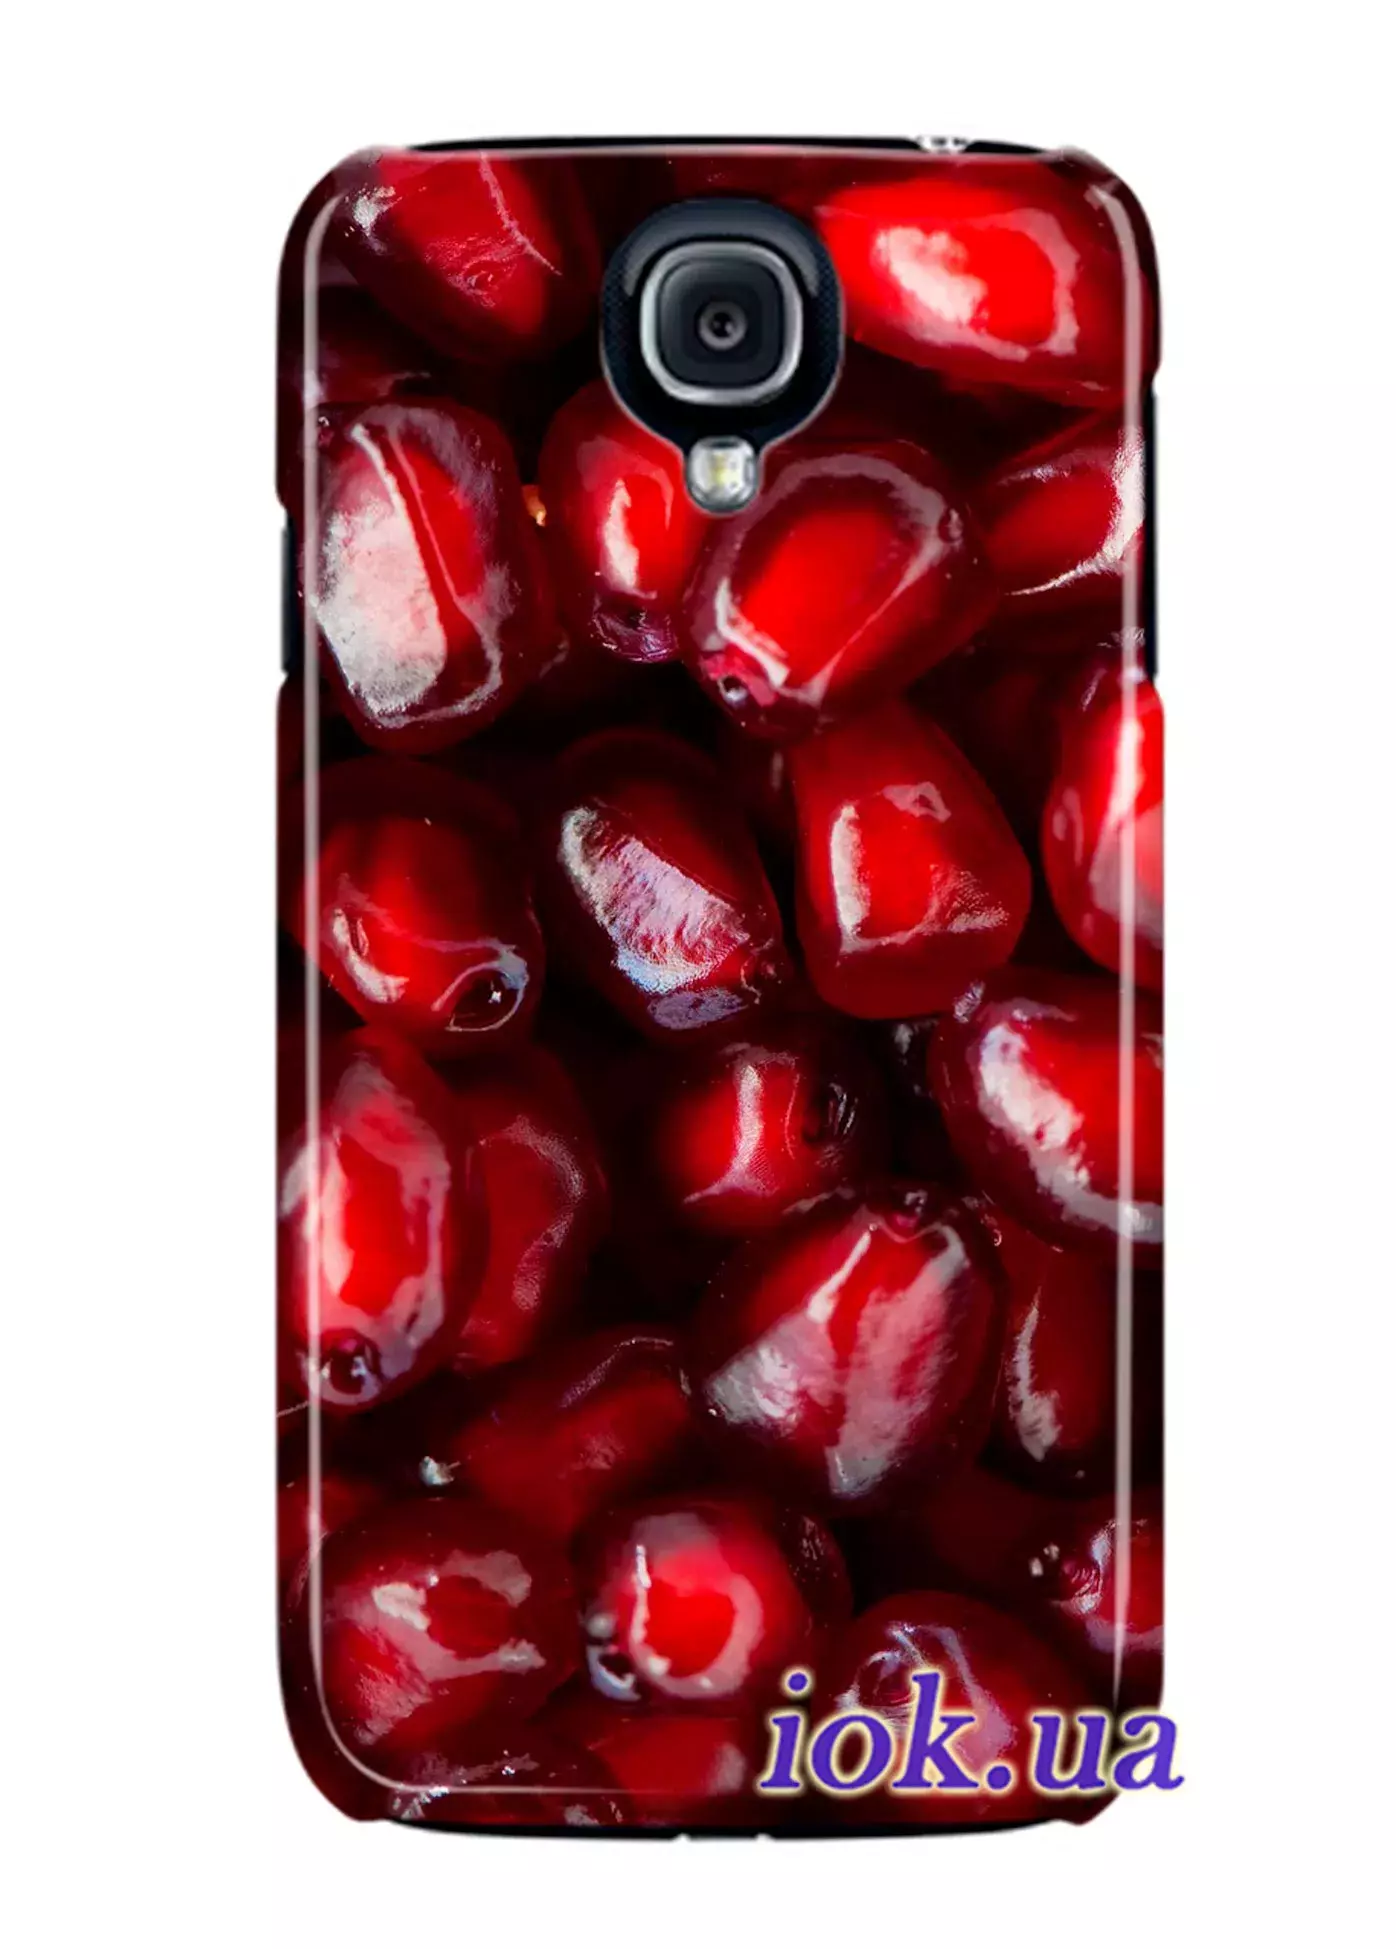 Чехол для Galaxy S4 Black Edition - Сочные плоды